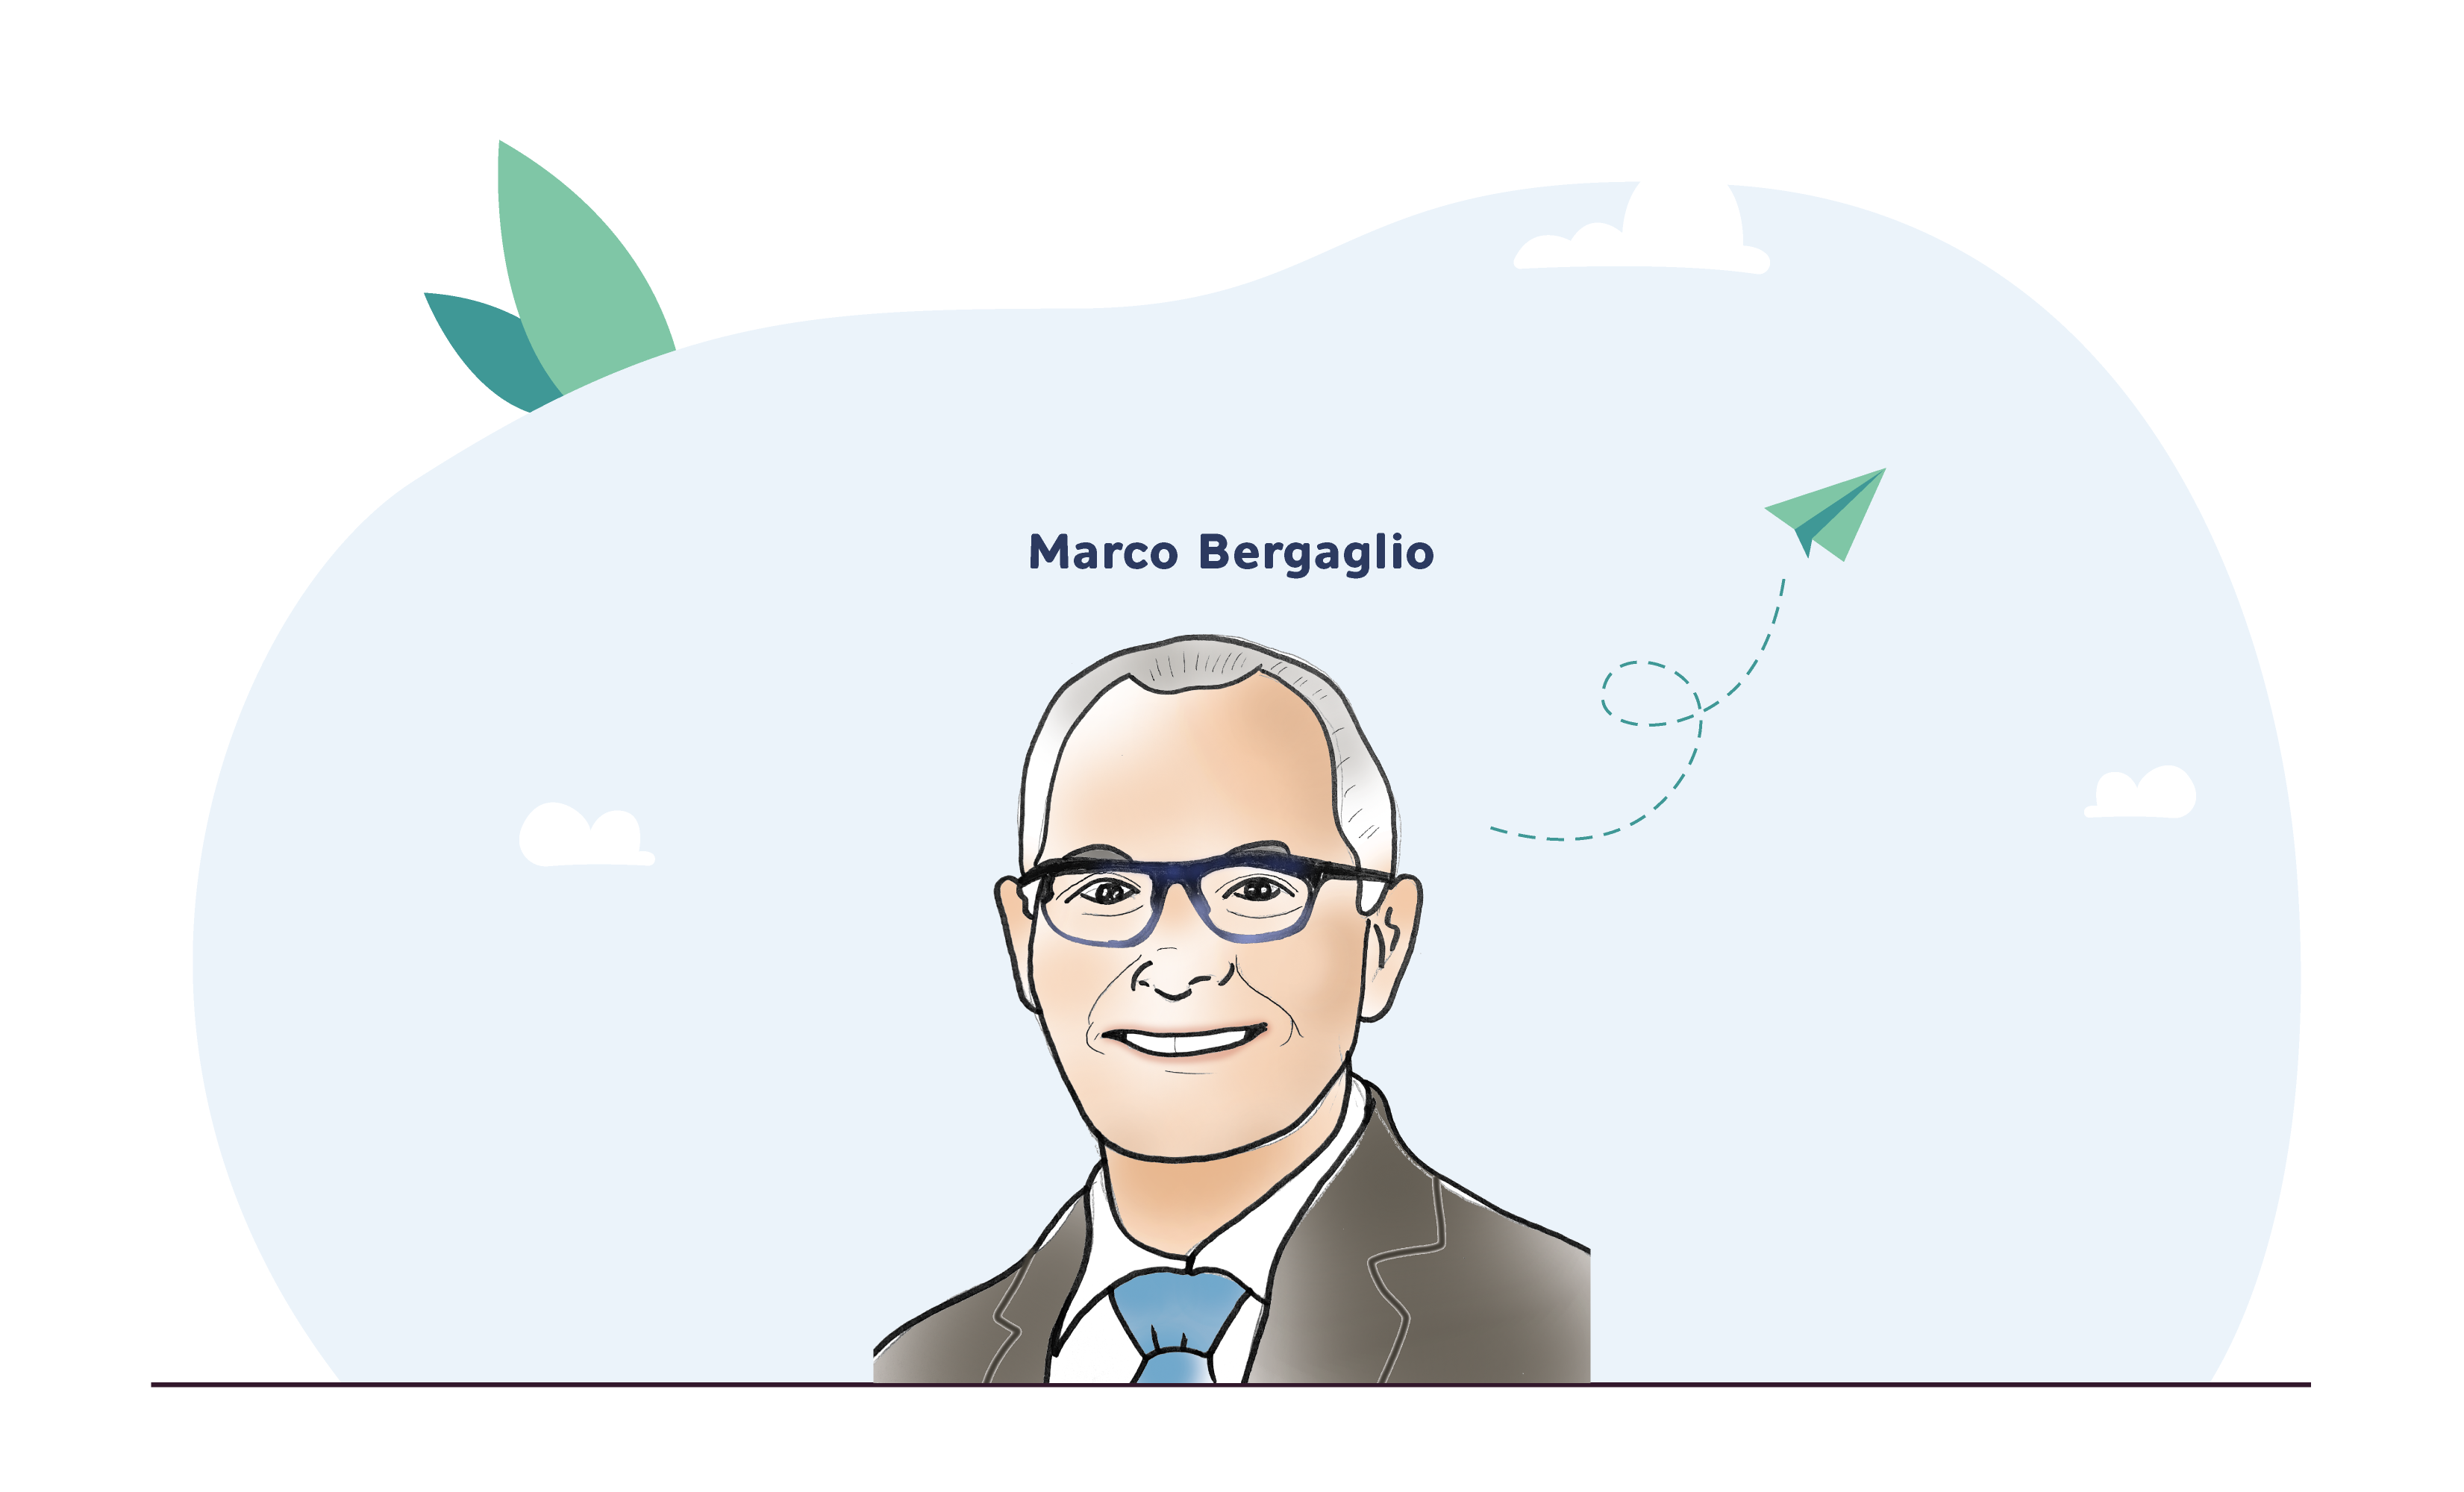 Marco Bergaglio: “La Plastica ha contribuito al benessere negli ultimi 60 anni”